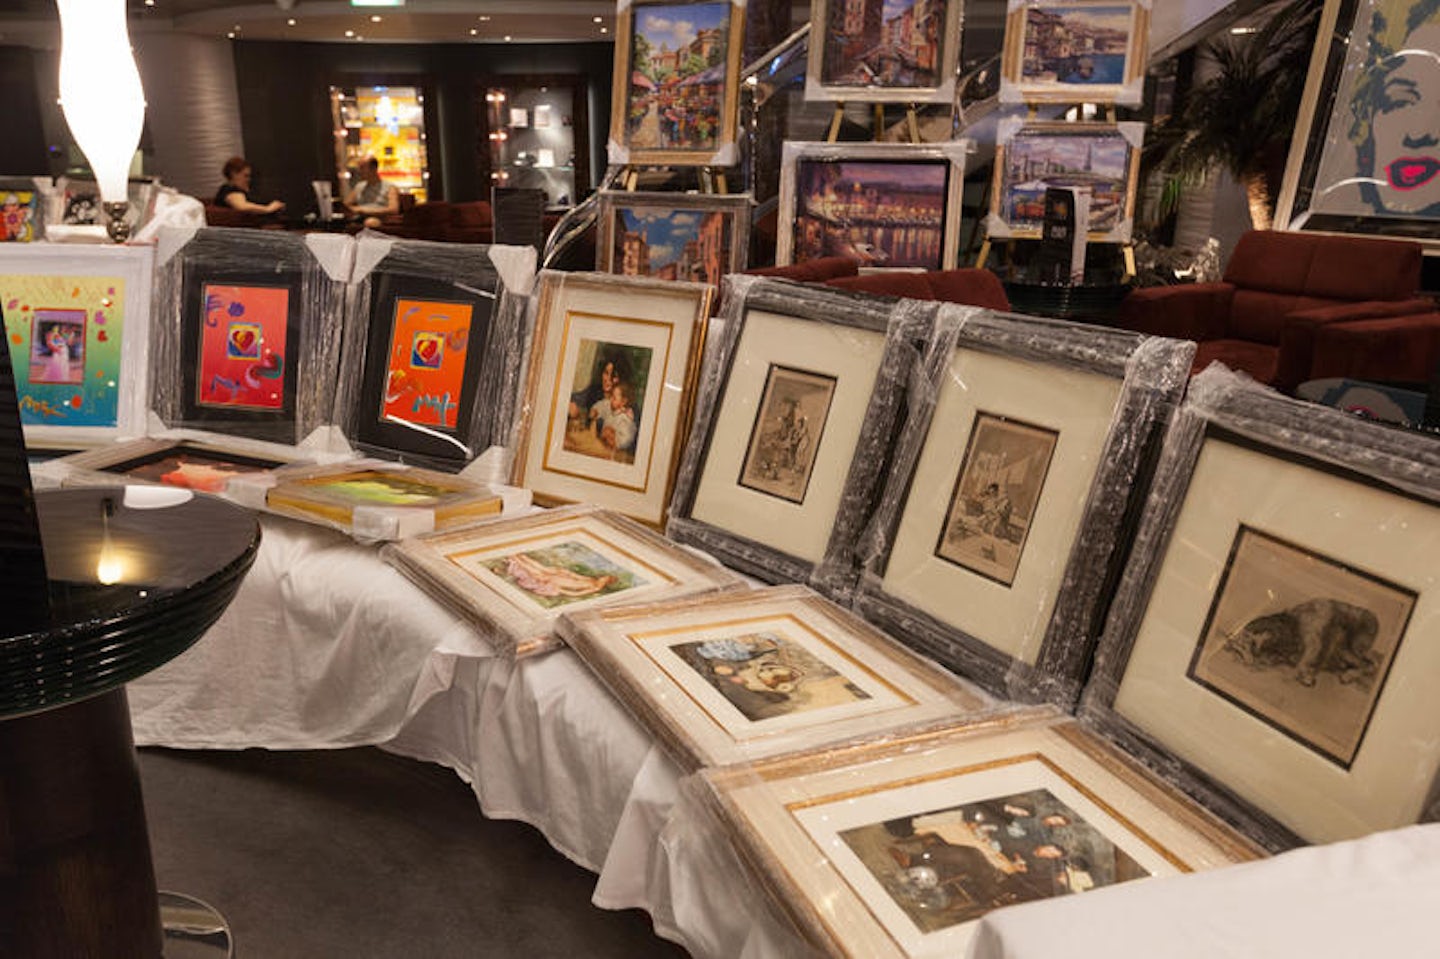 Art Auction on MSC Divina